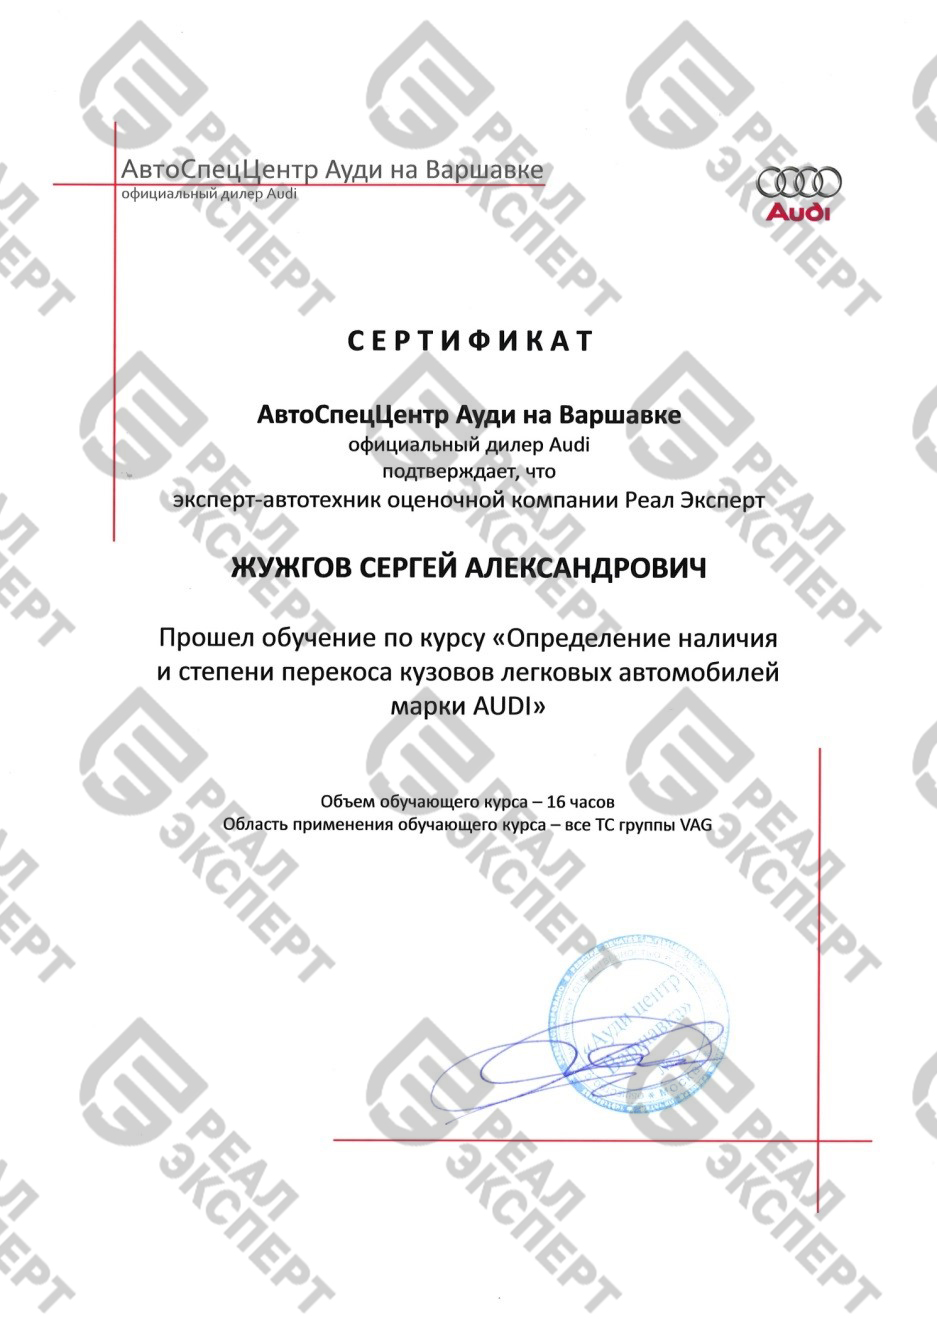 Сертификат на обучение в компании AUDI